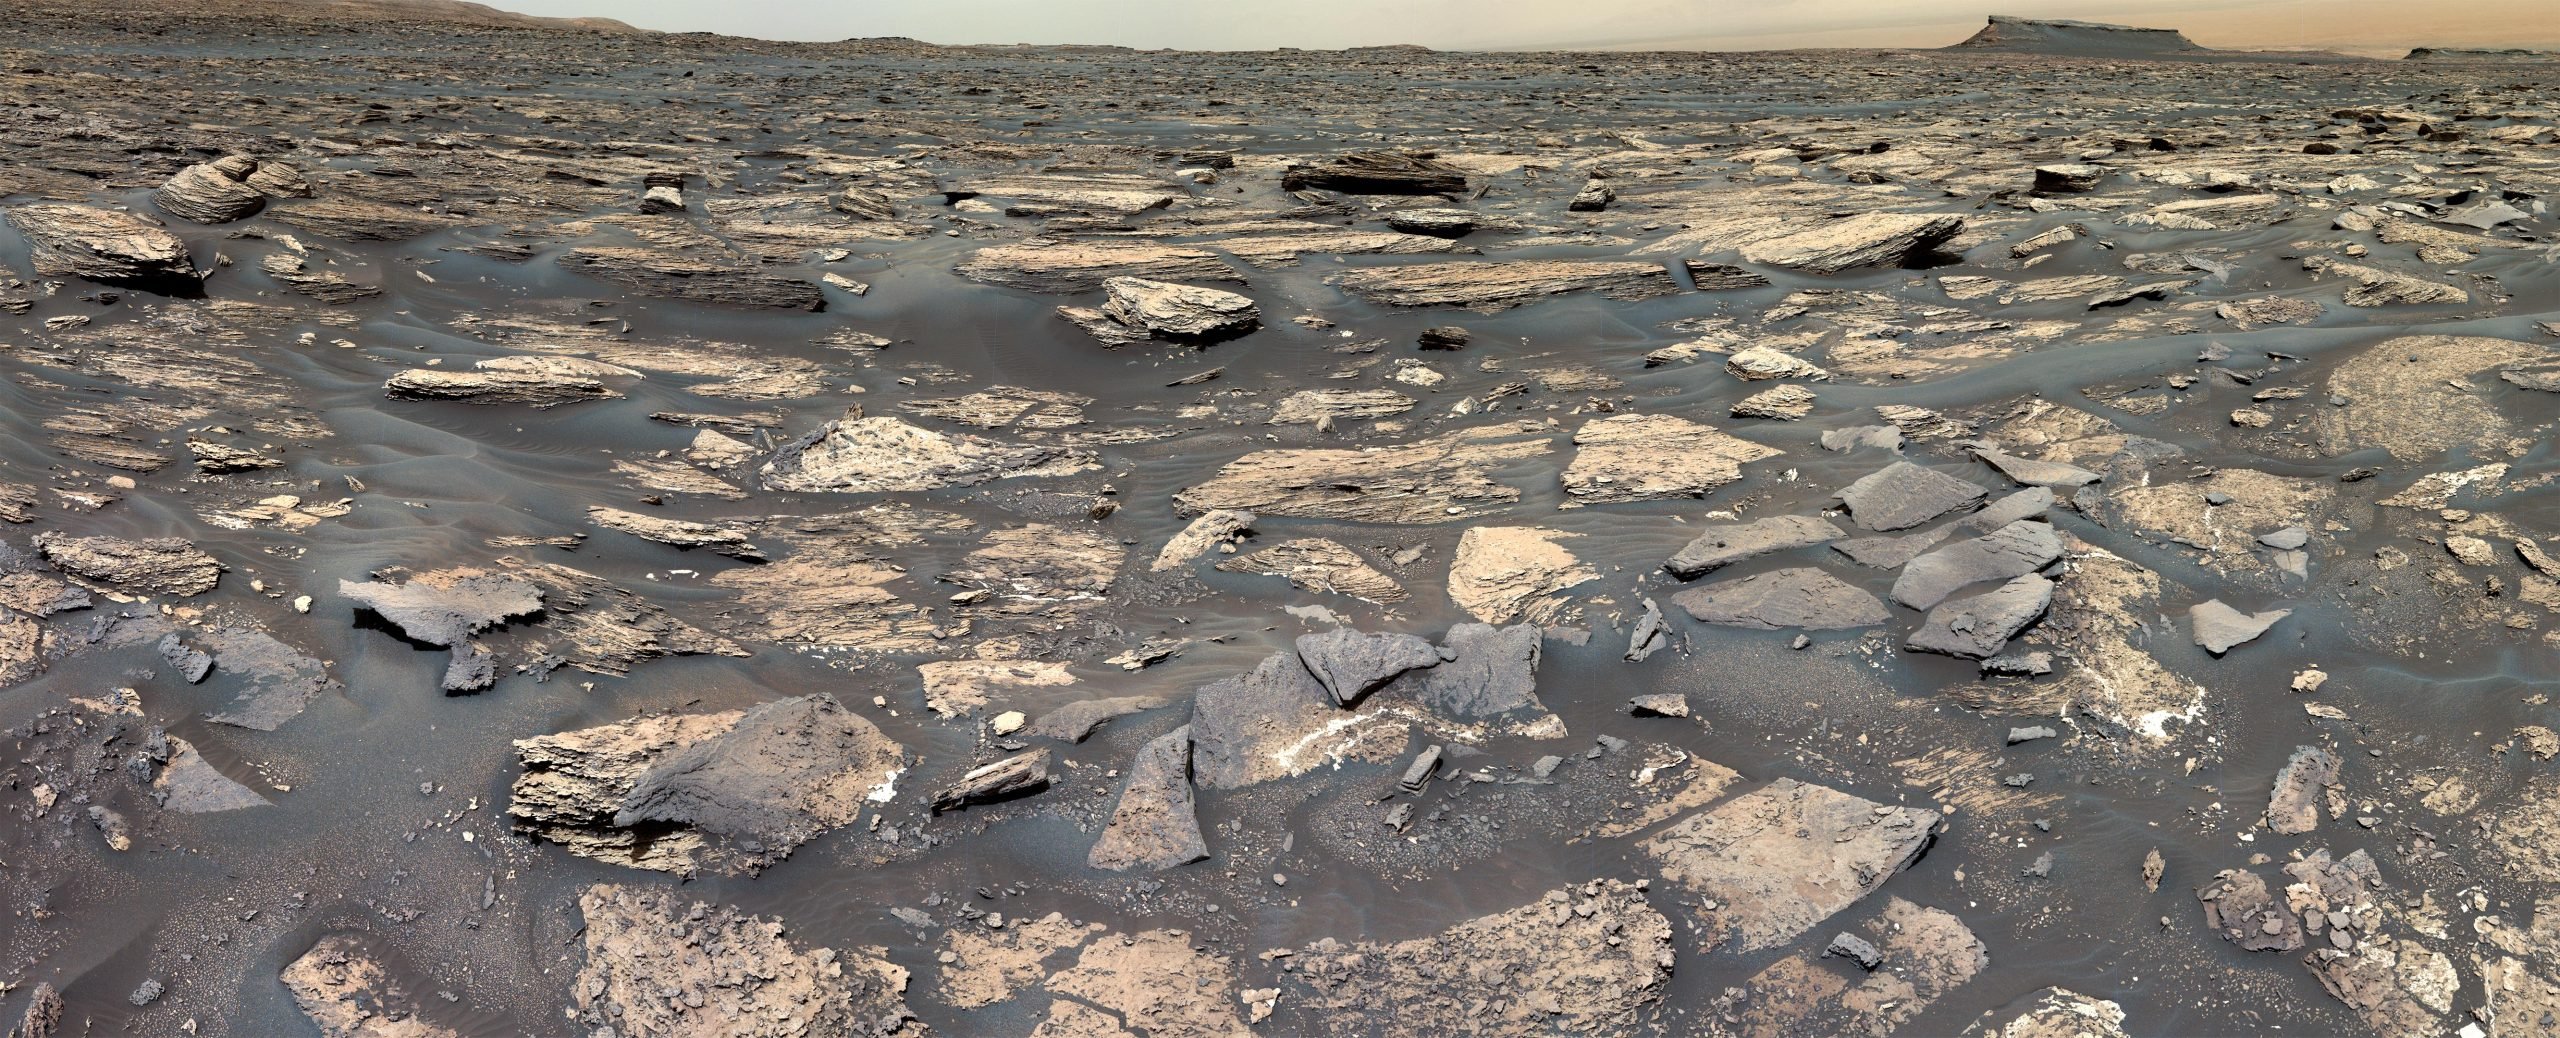 El rover Curiosity de la NASA detecta signos de un entorno similar a la Tierra en el antiguo Marte